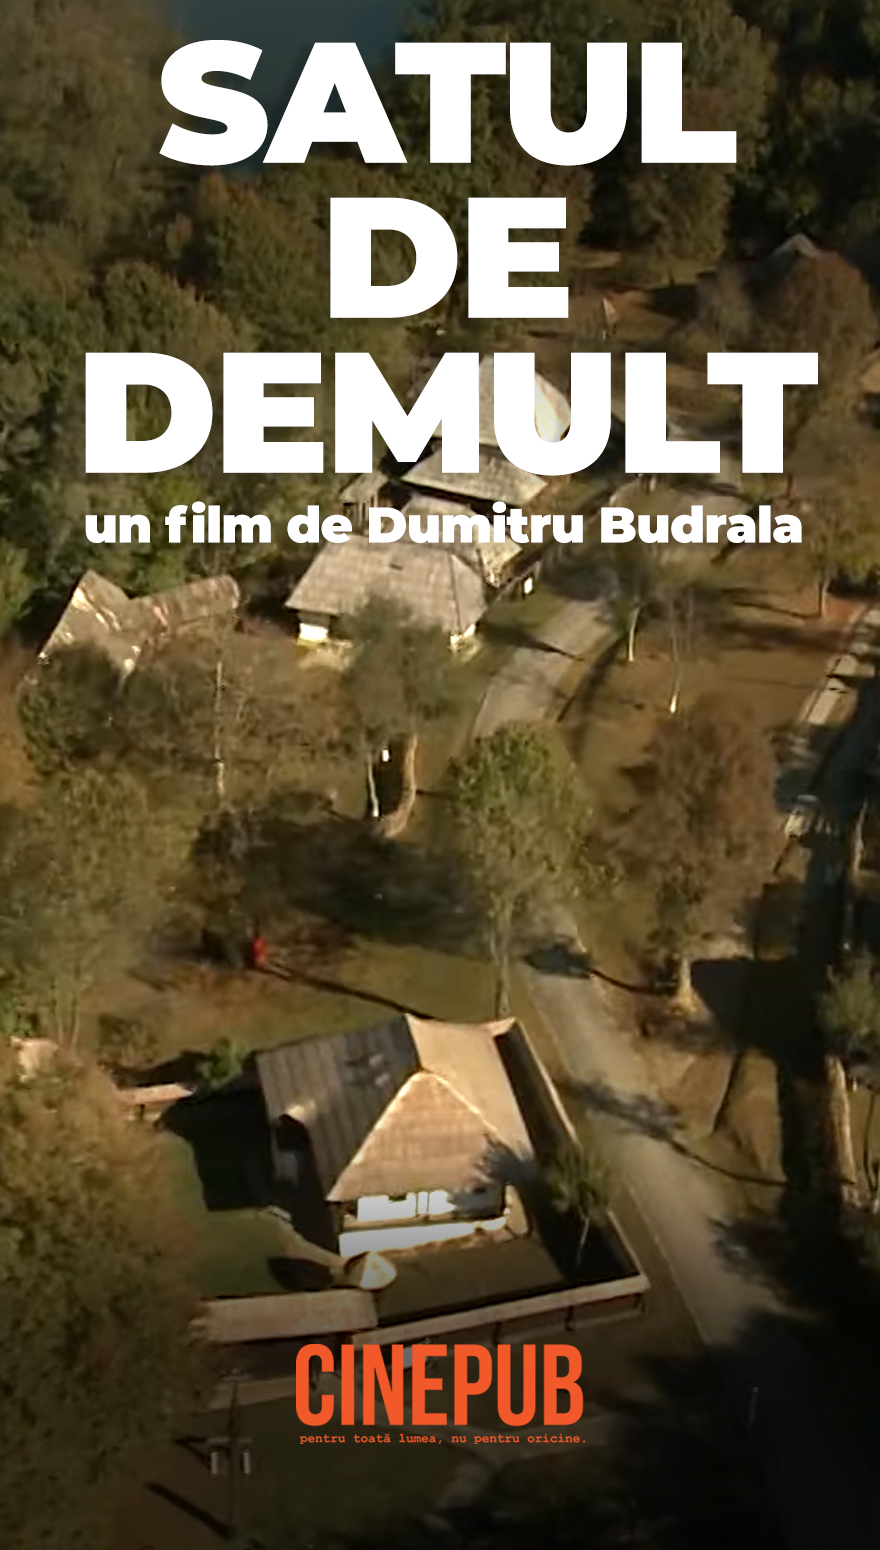 Satul de demult - documentar online de Dumitru Budrala - CINEPUB